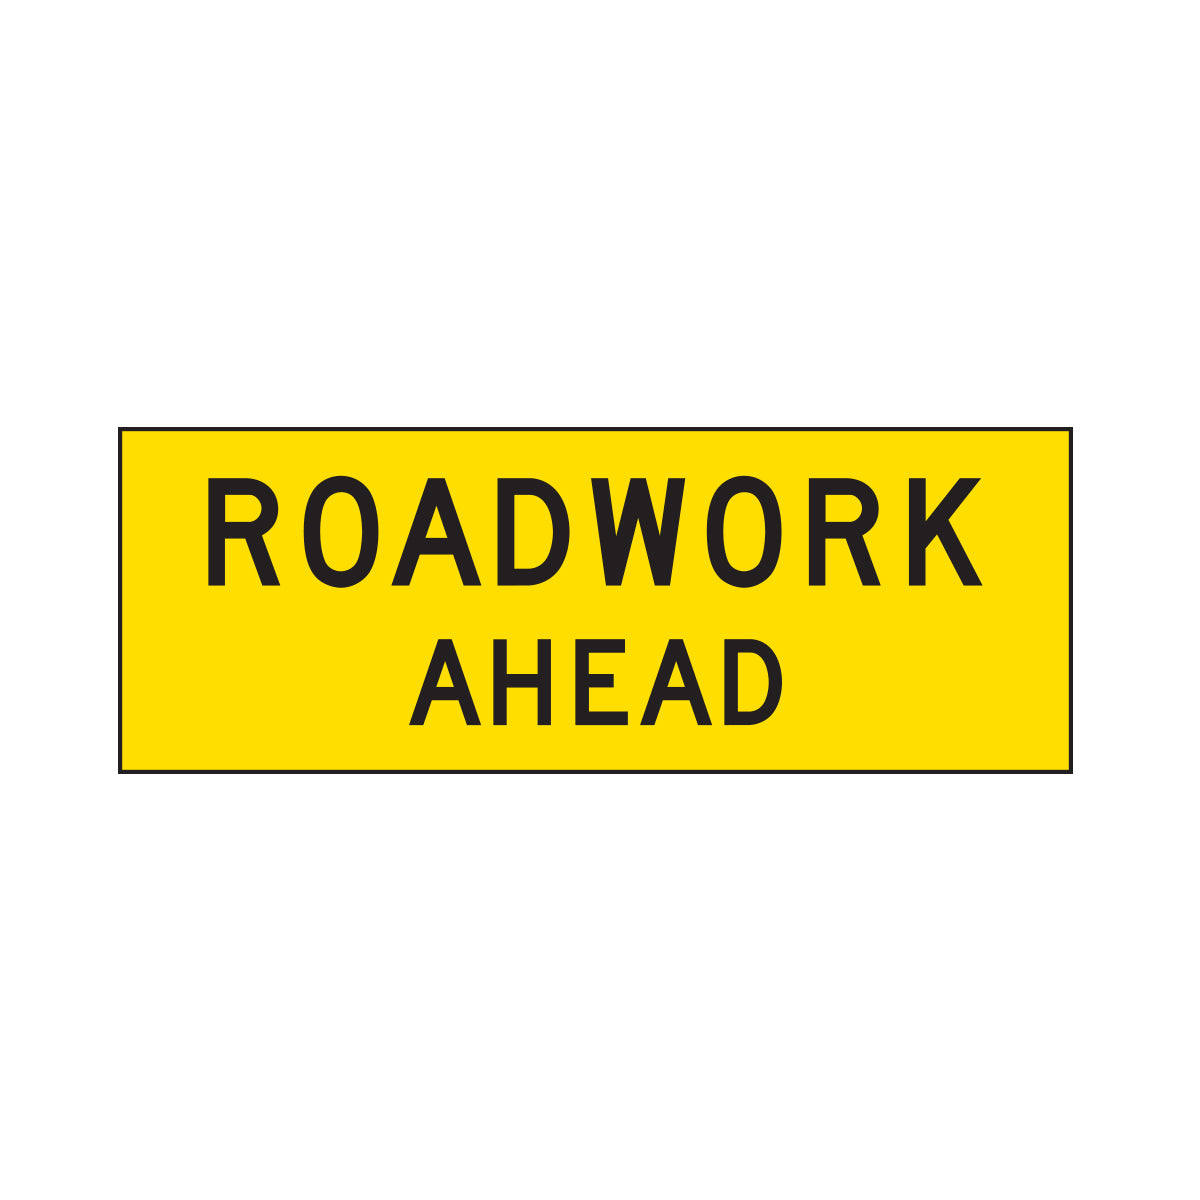 Warning: Roadwork Ahead Sign